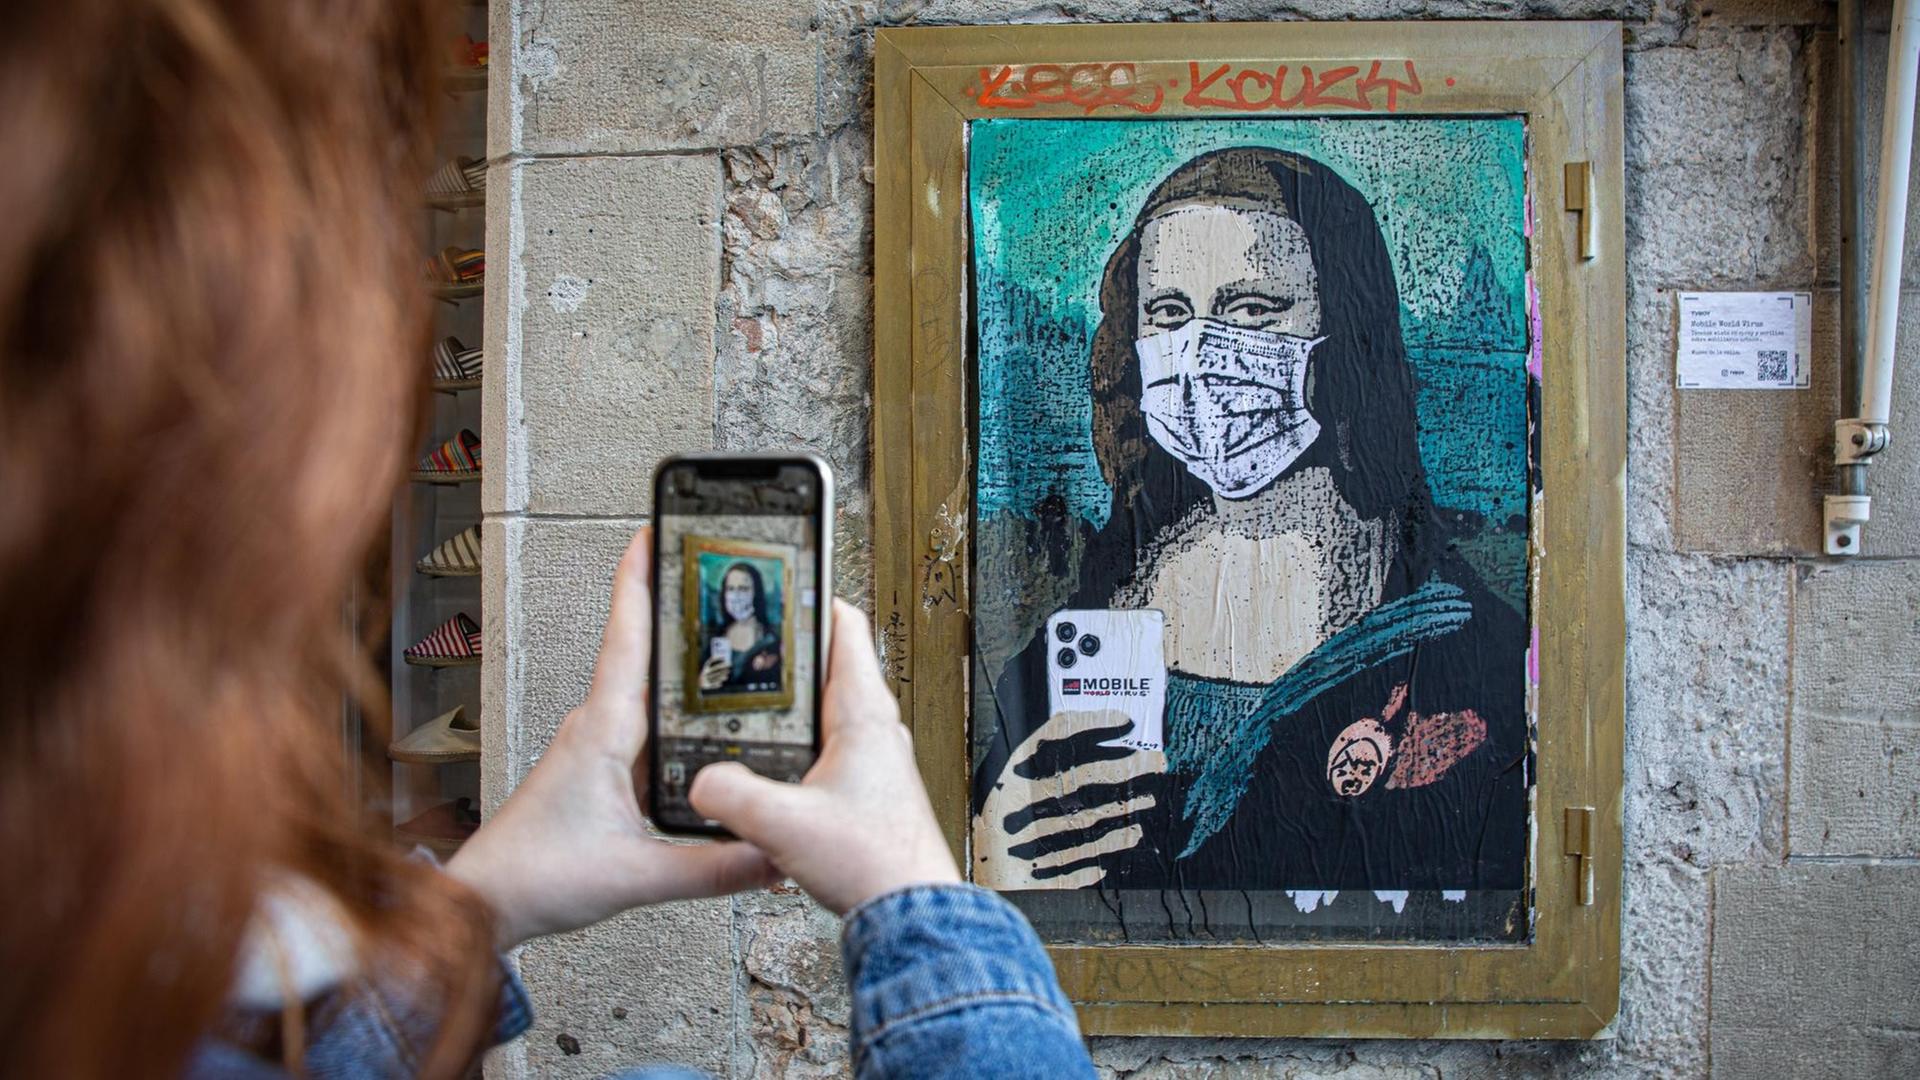 An einer Wand ist eine Graffito-Adaption der Mona Lisa zu sehen. Sie trägt Mundschutz und hält ein Smartphone, als ob sie fotografieren würde. Im Vordergrund sind die Hände einer Frau zu sehen, die dieses Bild fotografieren.